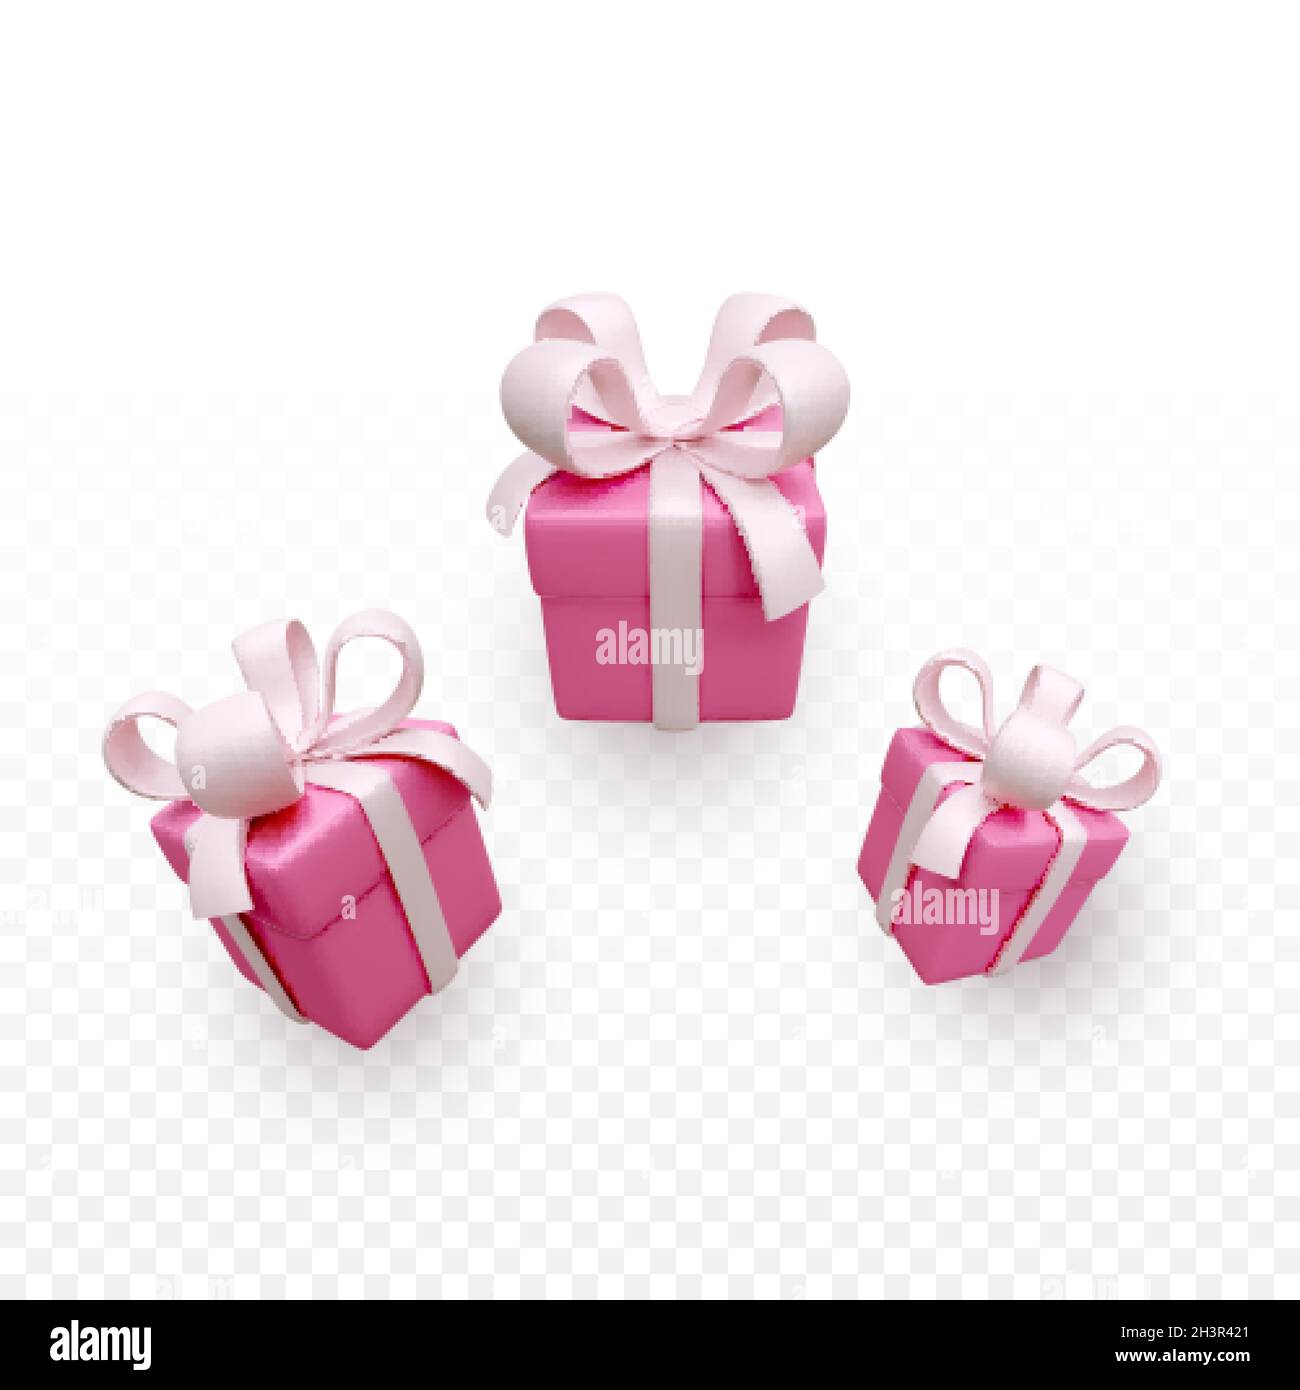 Scatole regalo in morbido colore rosa. 3d render holiday chiuso scatola sorpresa con nastro rosa. Scatola rossa presente. Illustrazione vettoriale Illustrazione Vettoriale